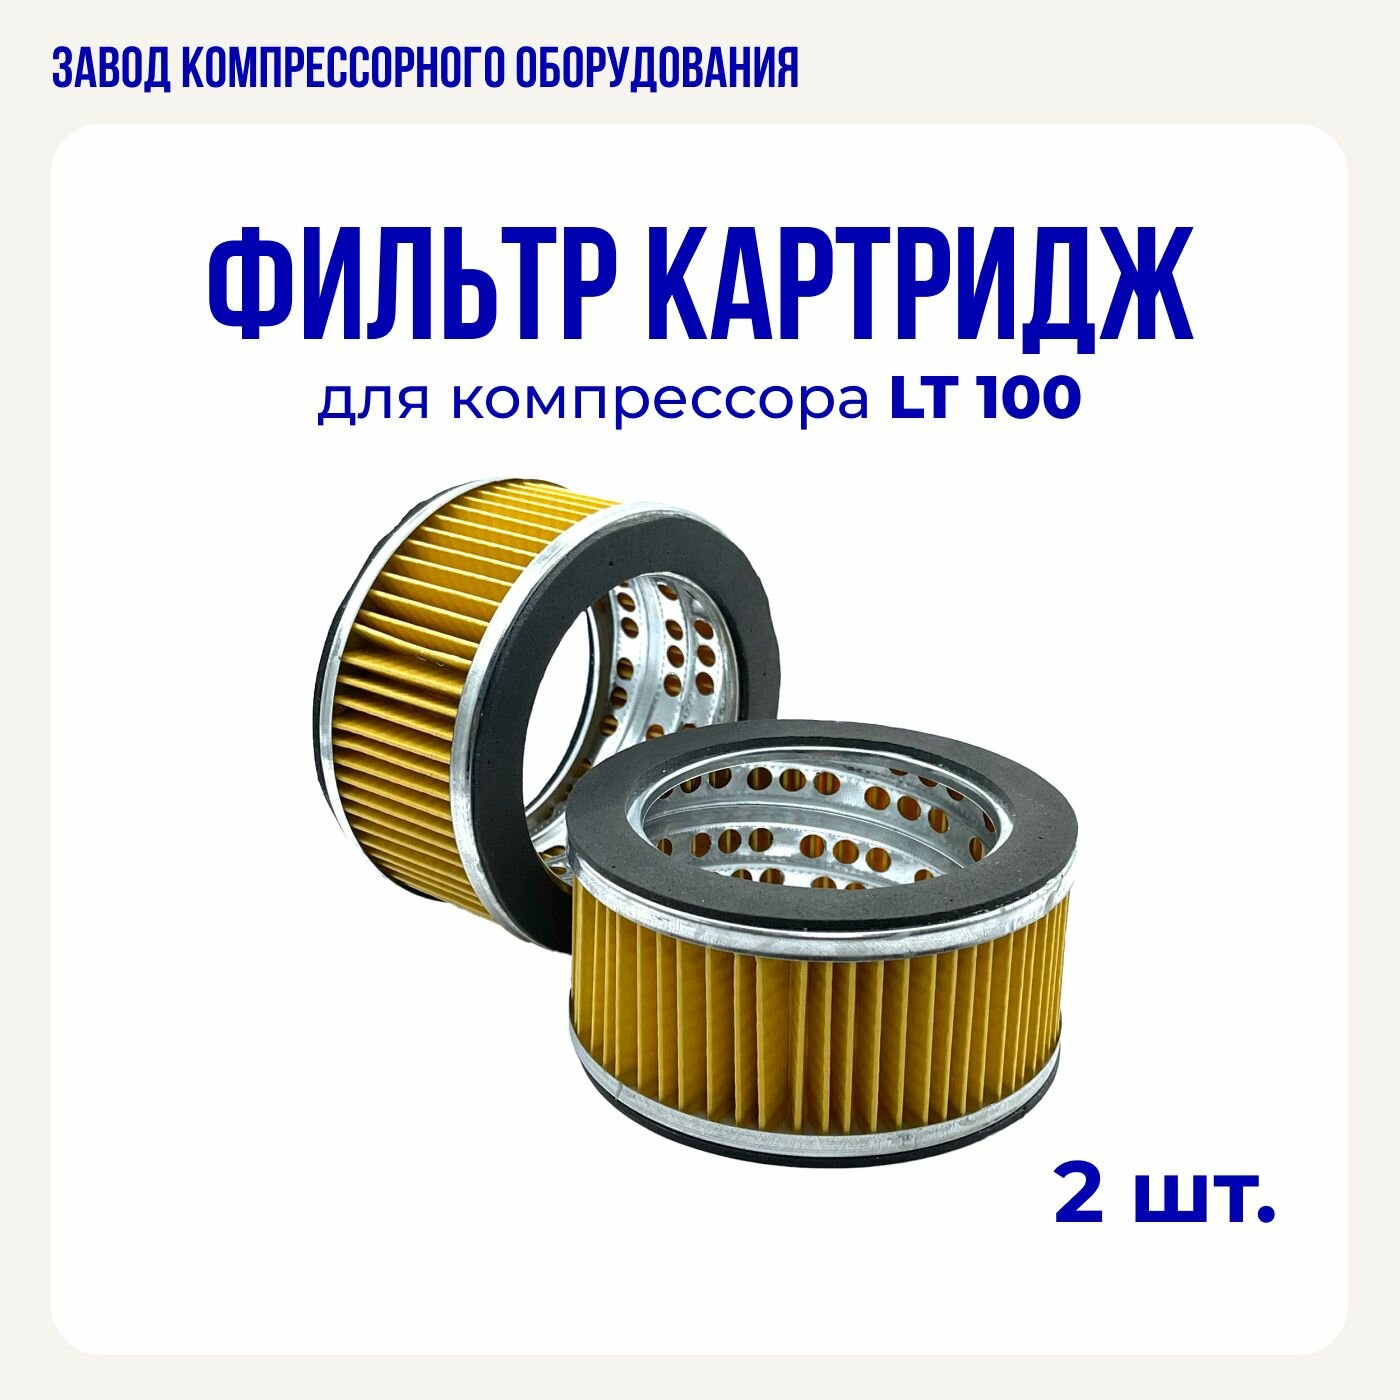 Картридж (фильтроэлемент) для воздушного компрессора LT-100 (комплект 2 шт.)